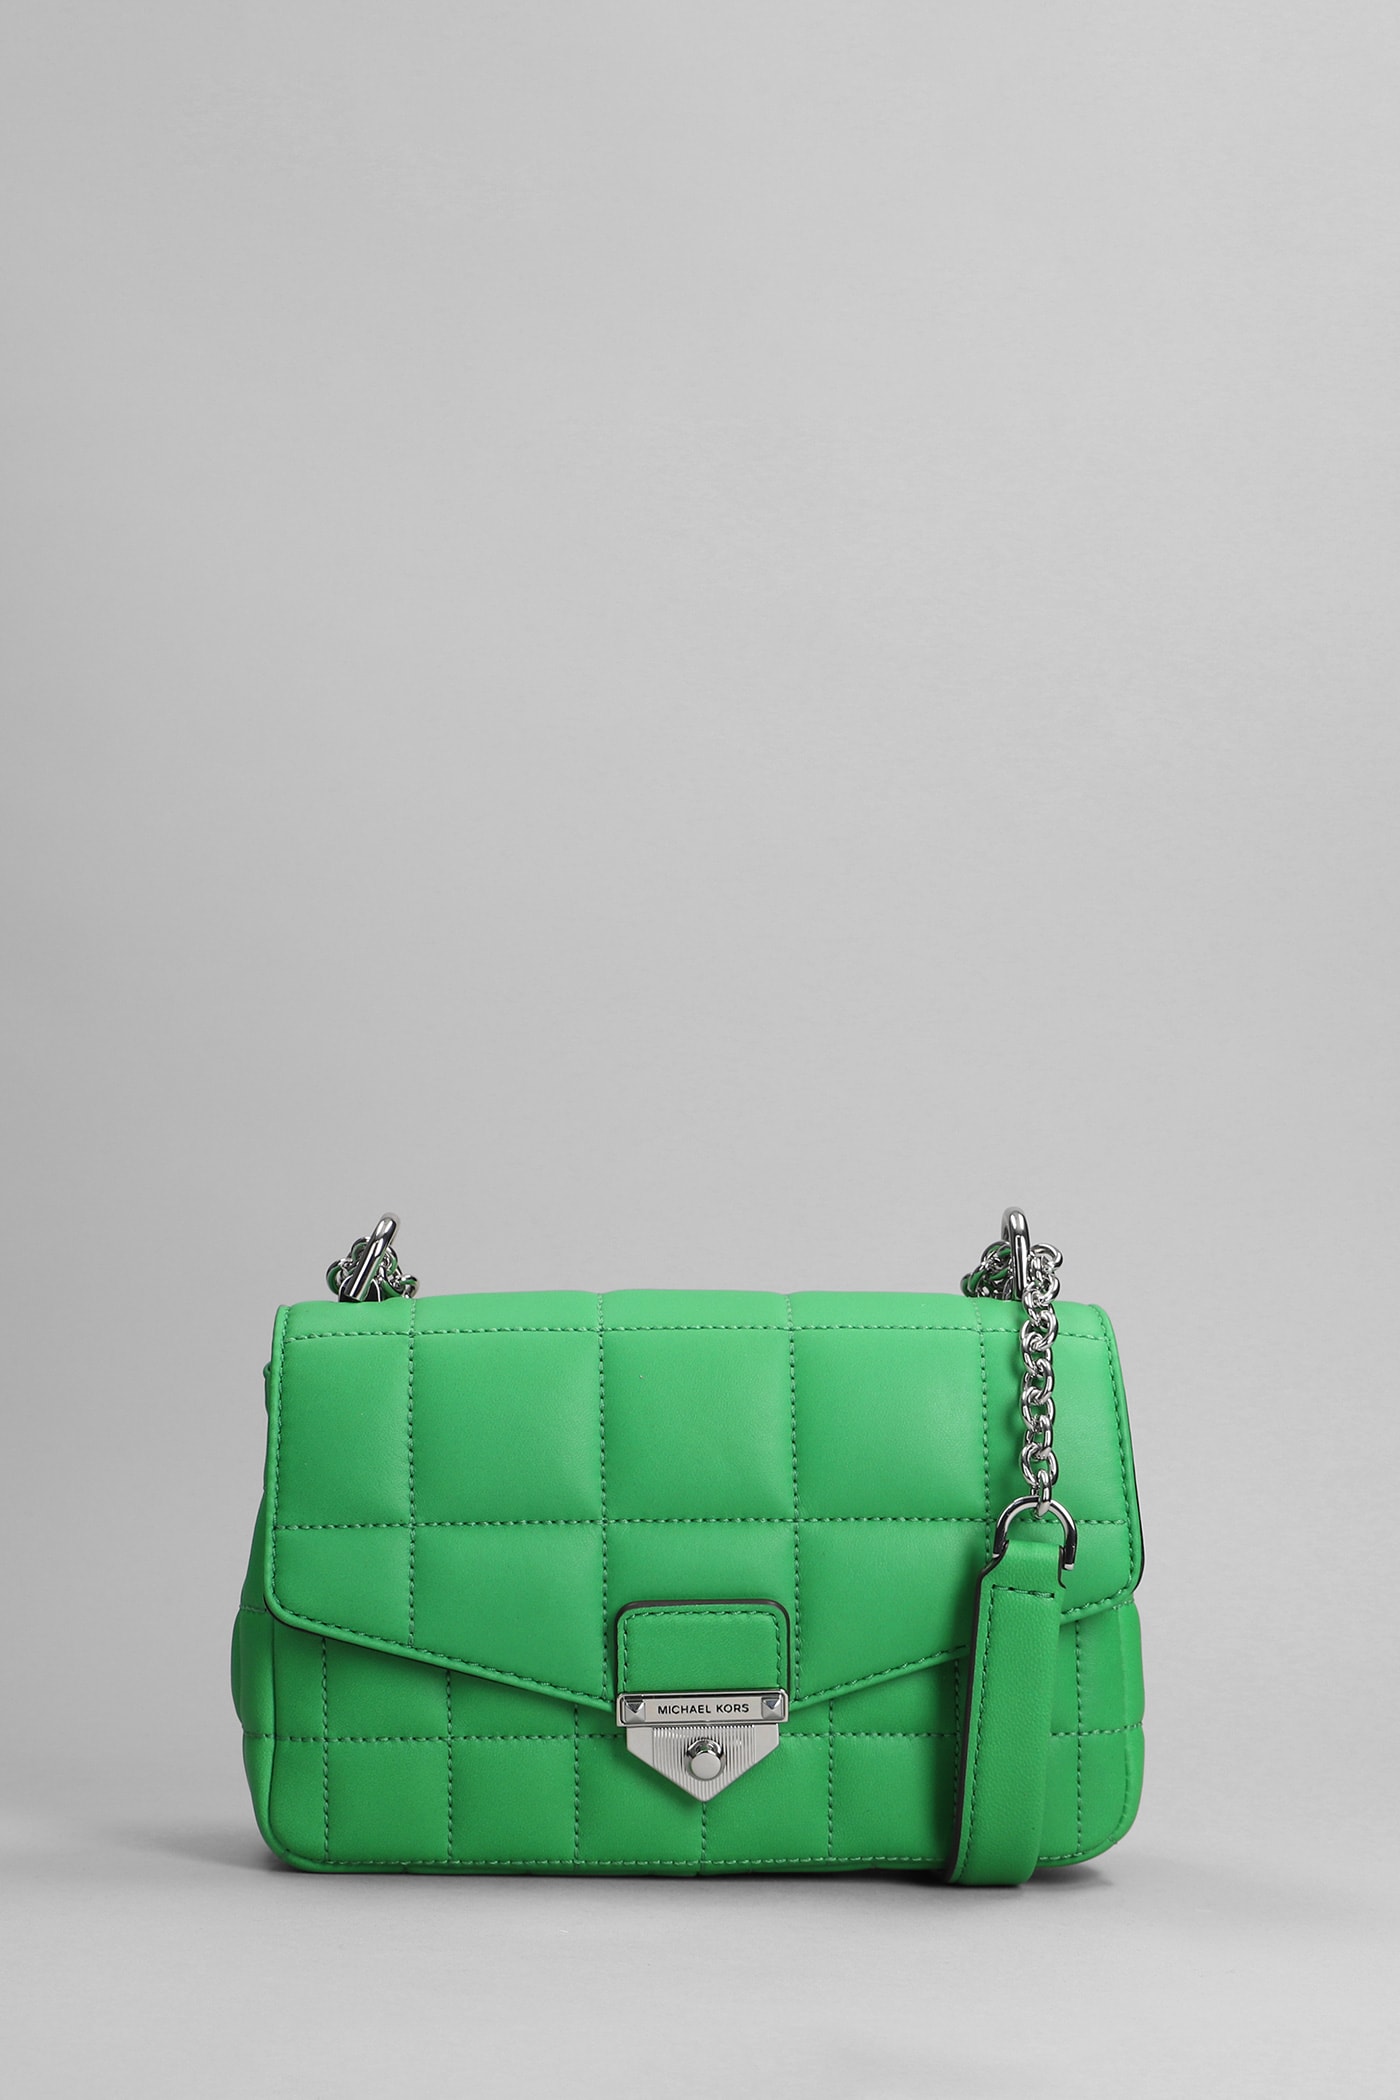 Michael Kors Soho Shoulder Bag In Green Leather